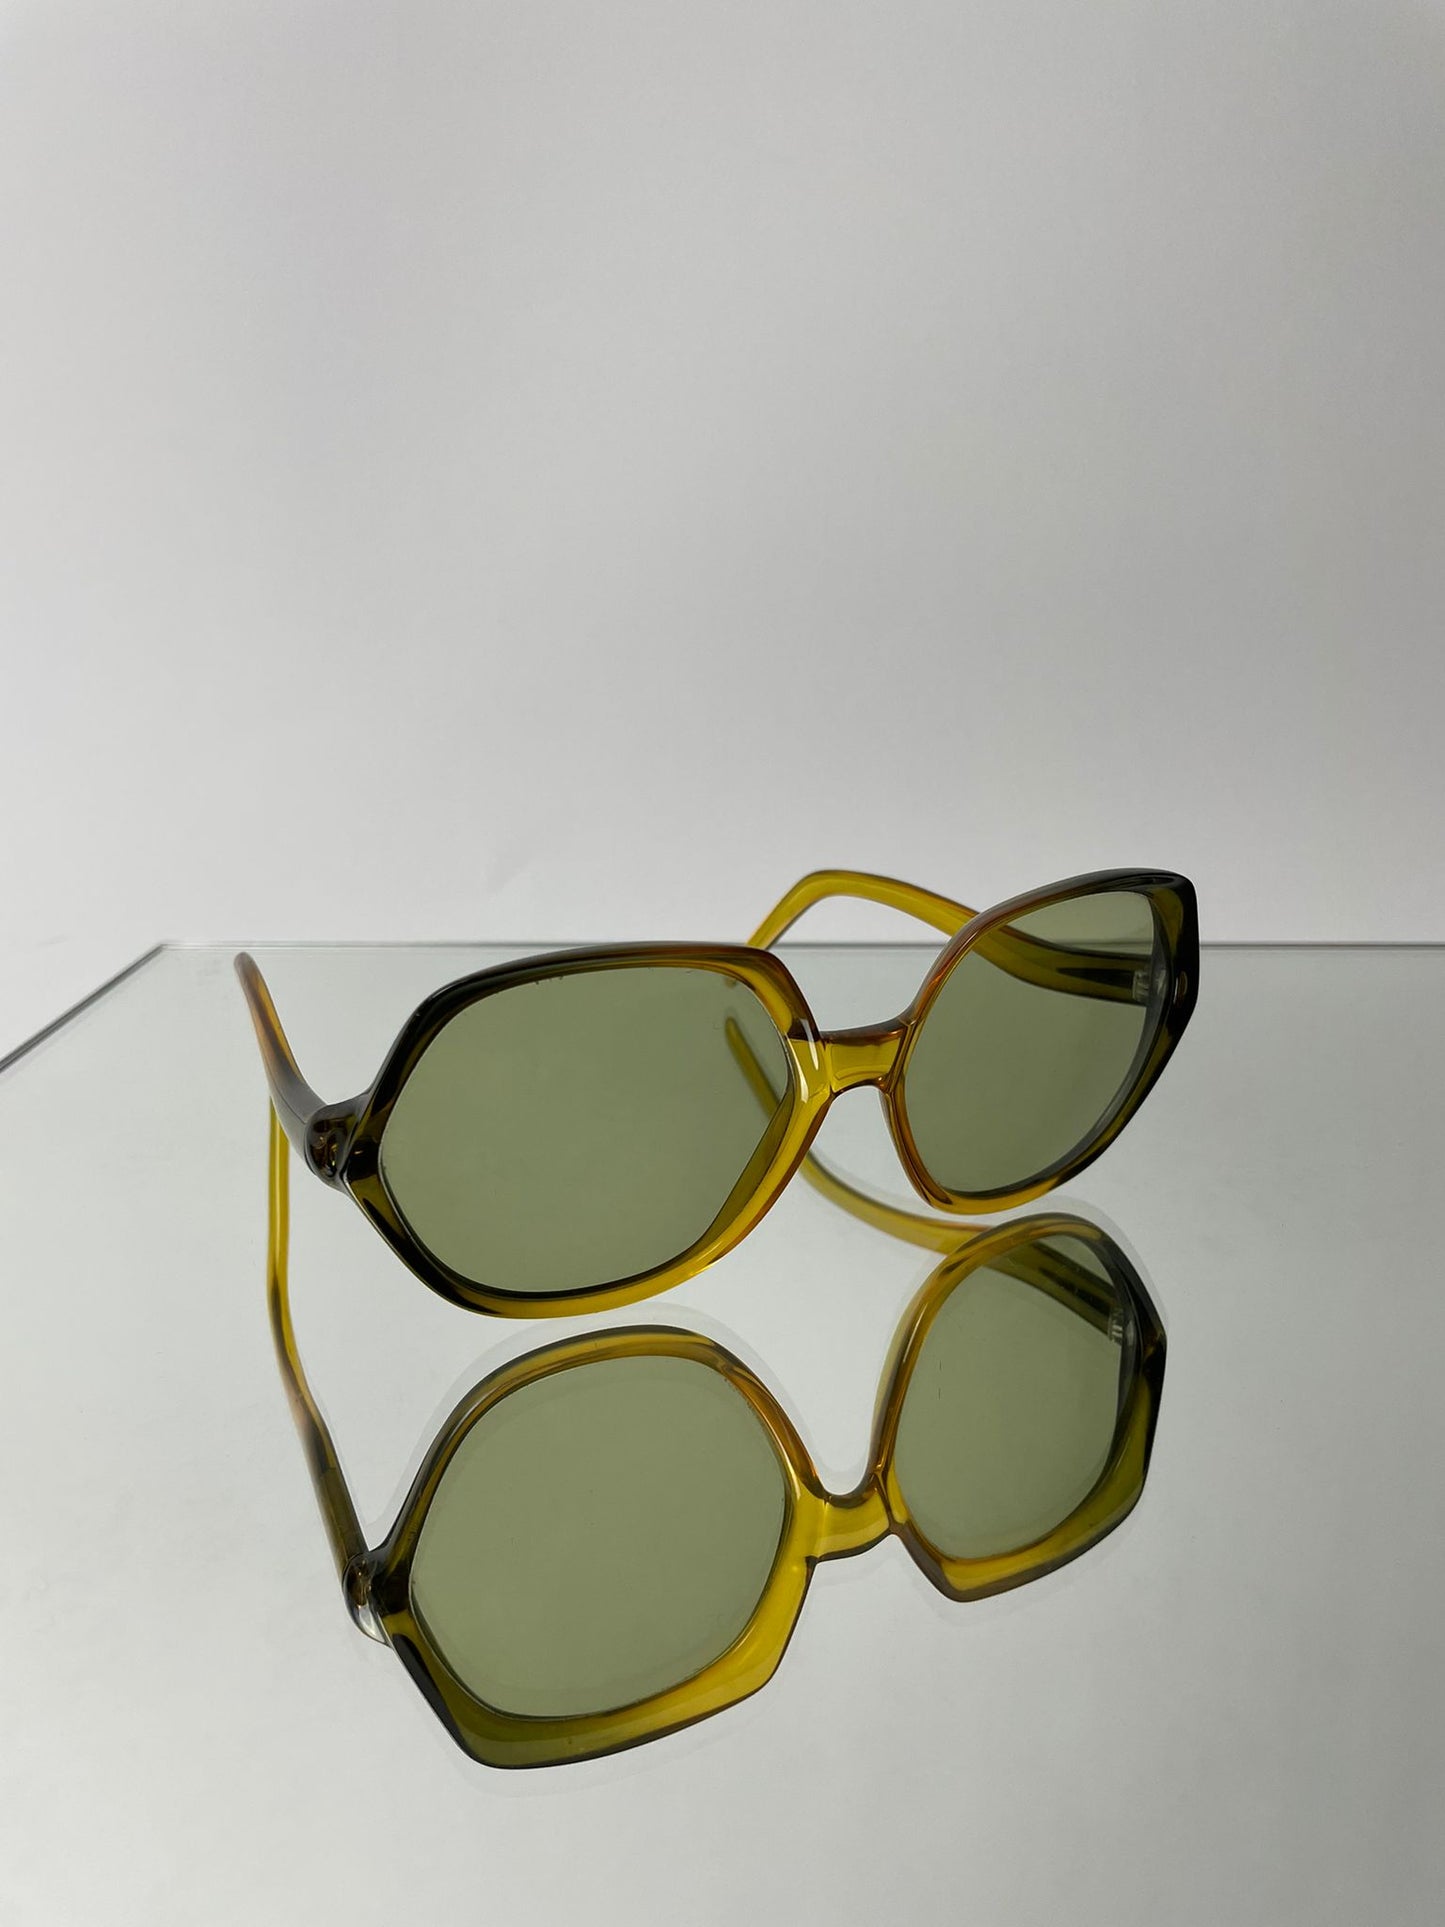 occhiali-green-1970-esagonali-ottime-condizioni